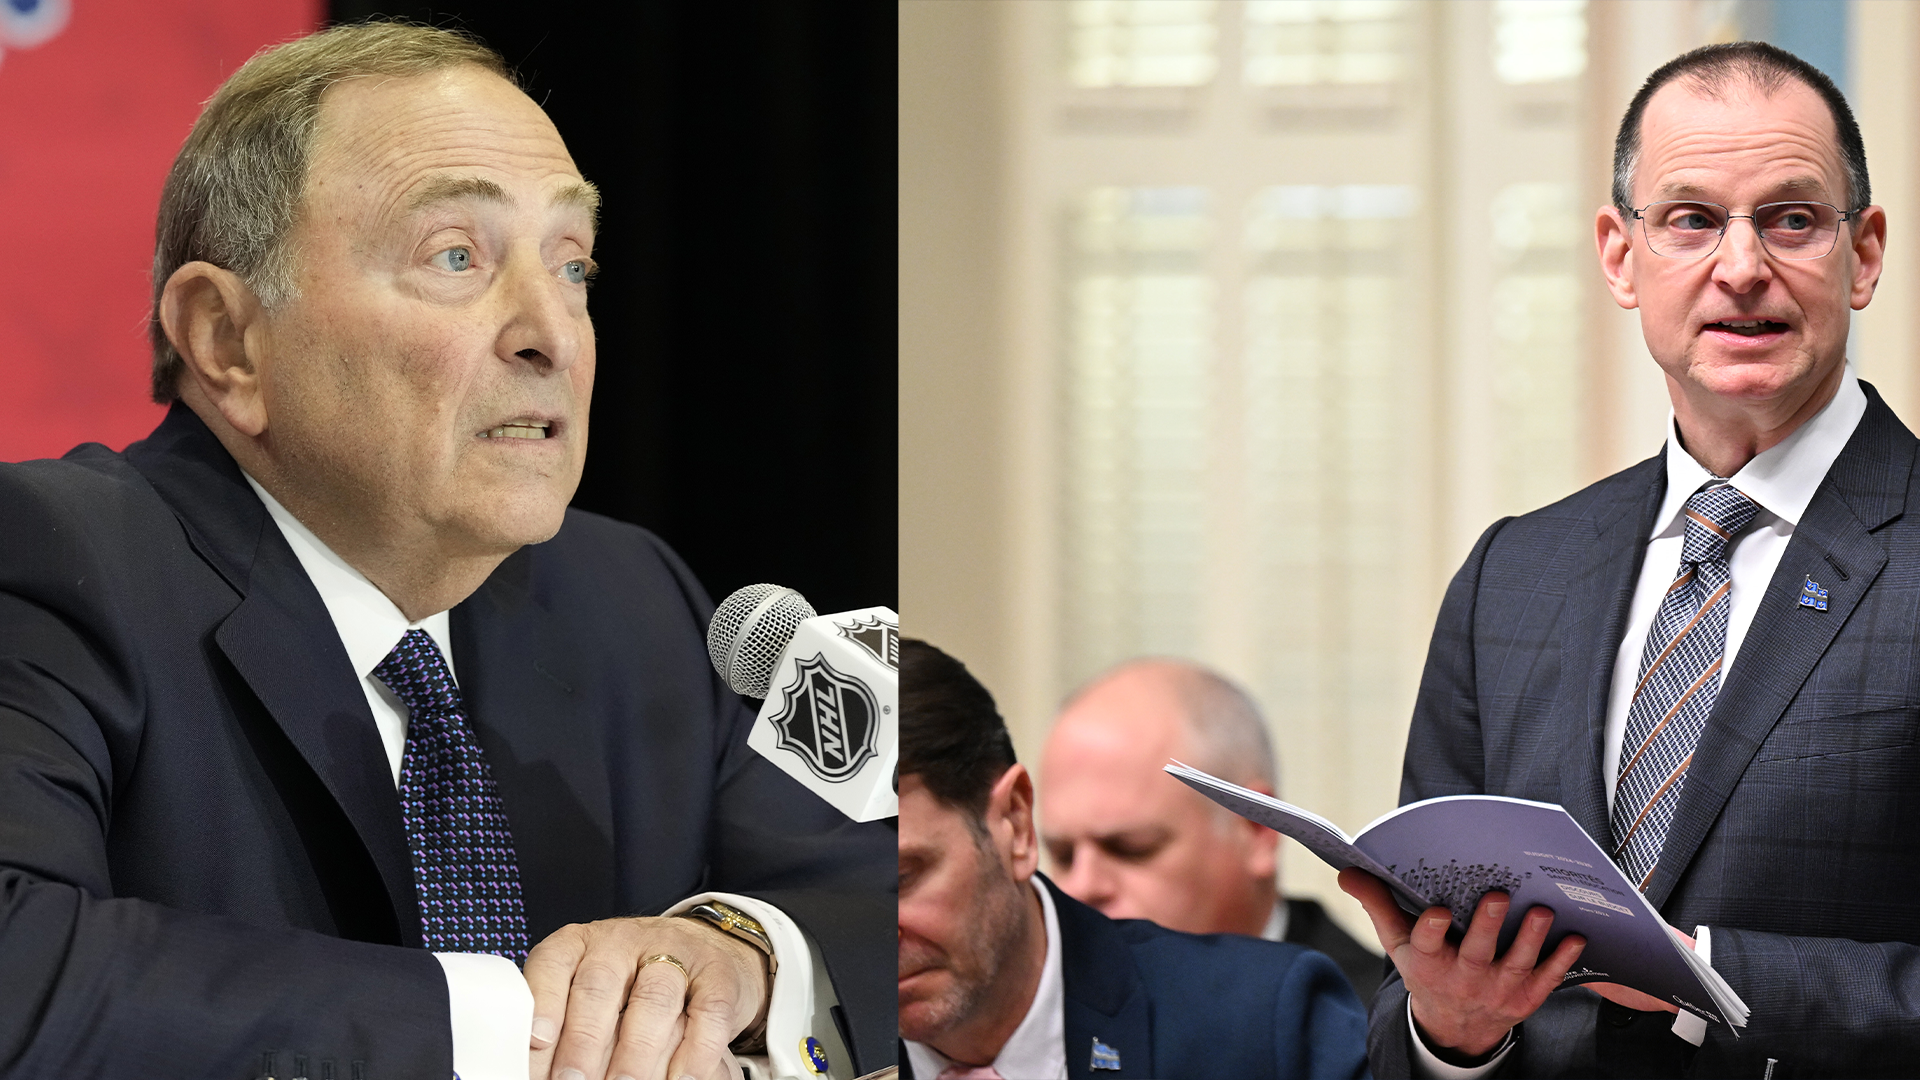 Le ministre responsable du dossier du retour d'une équipe de hockey professionnelle à Québec, Eric Girard, était à New York mardi afin de rencontrer le commissaire de la Ligue nationale de hockey (LNH), Gary Bettman.